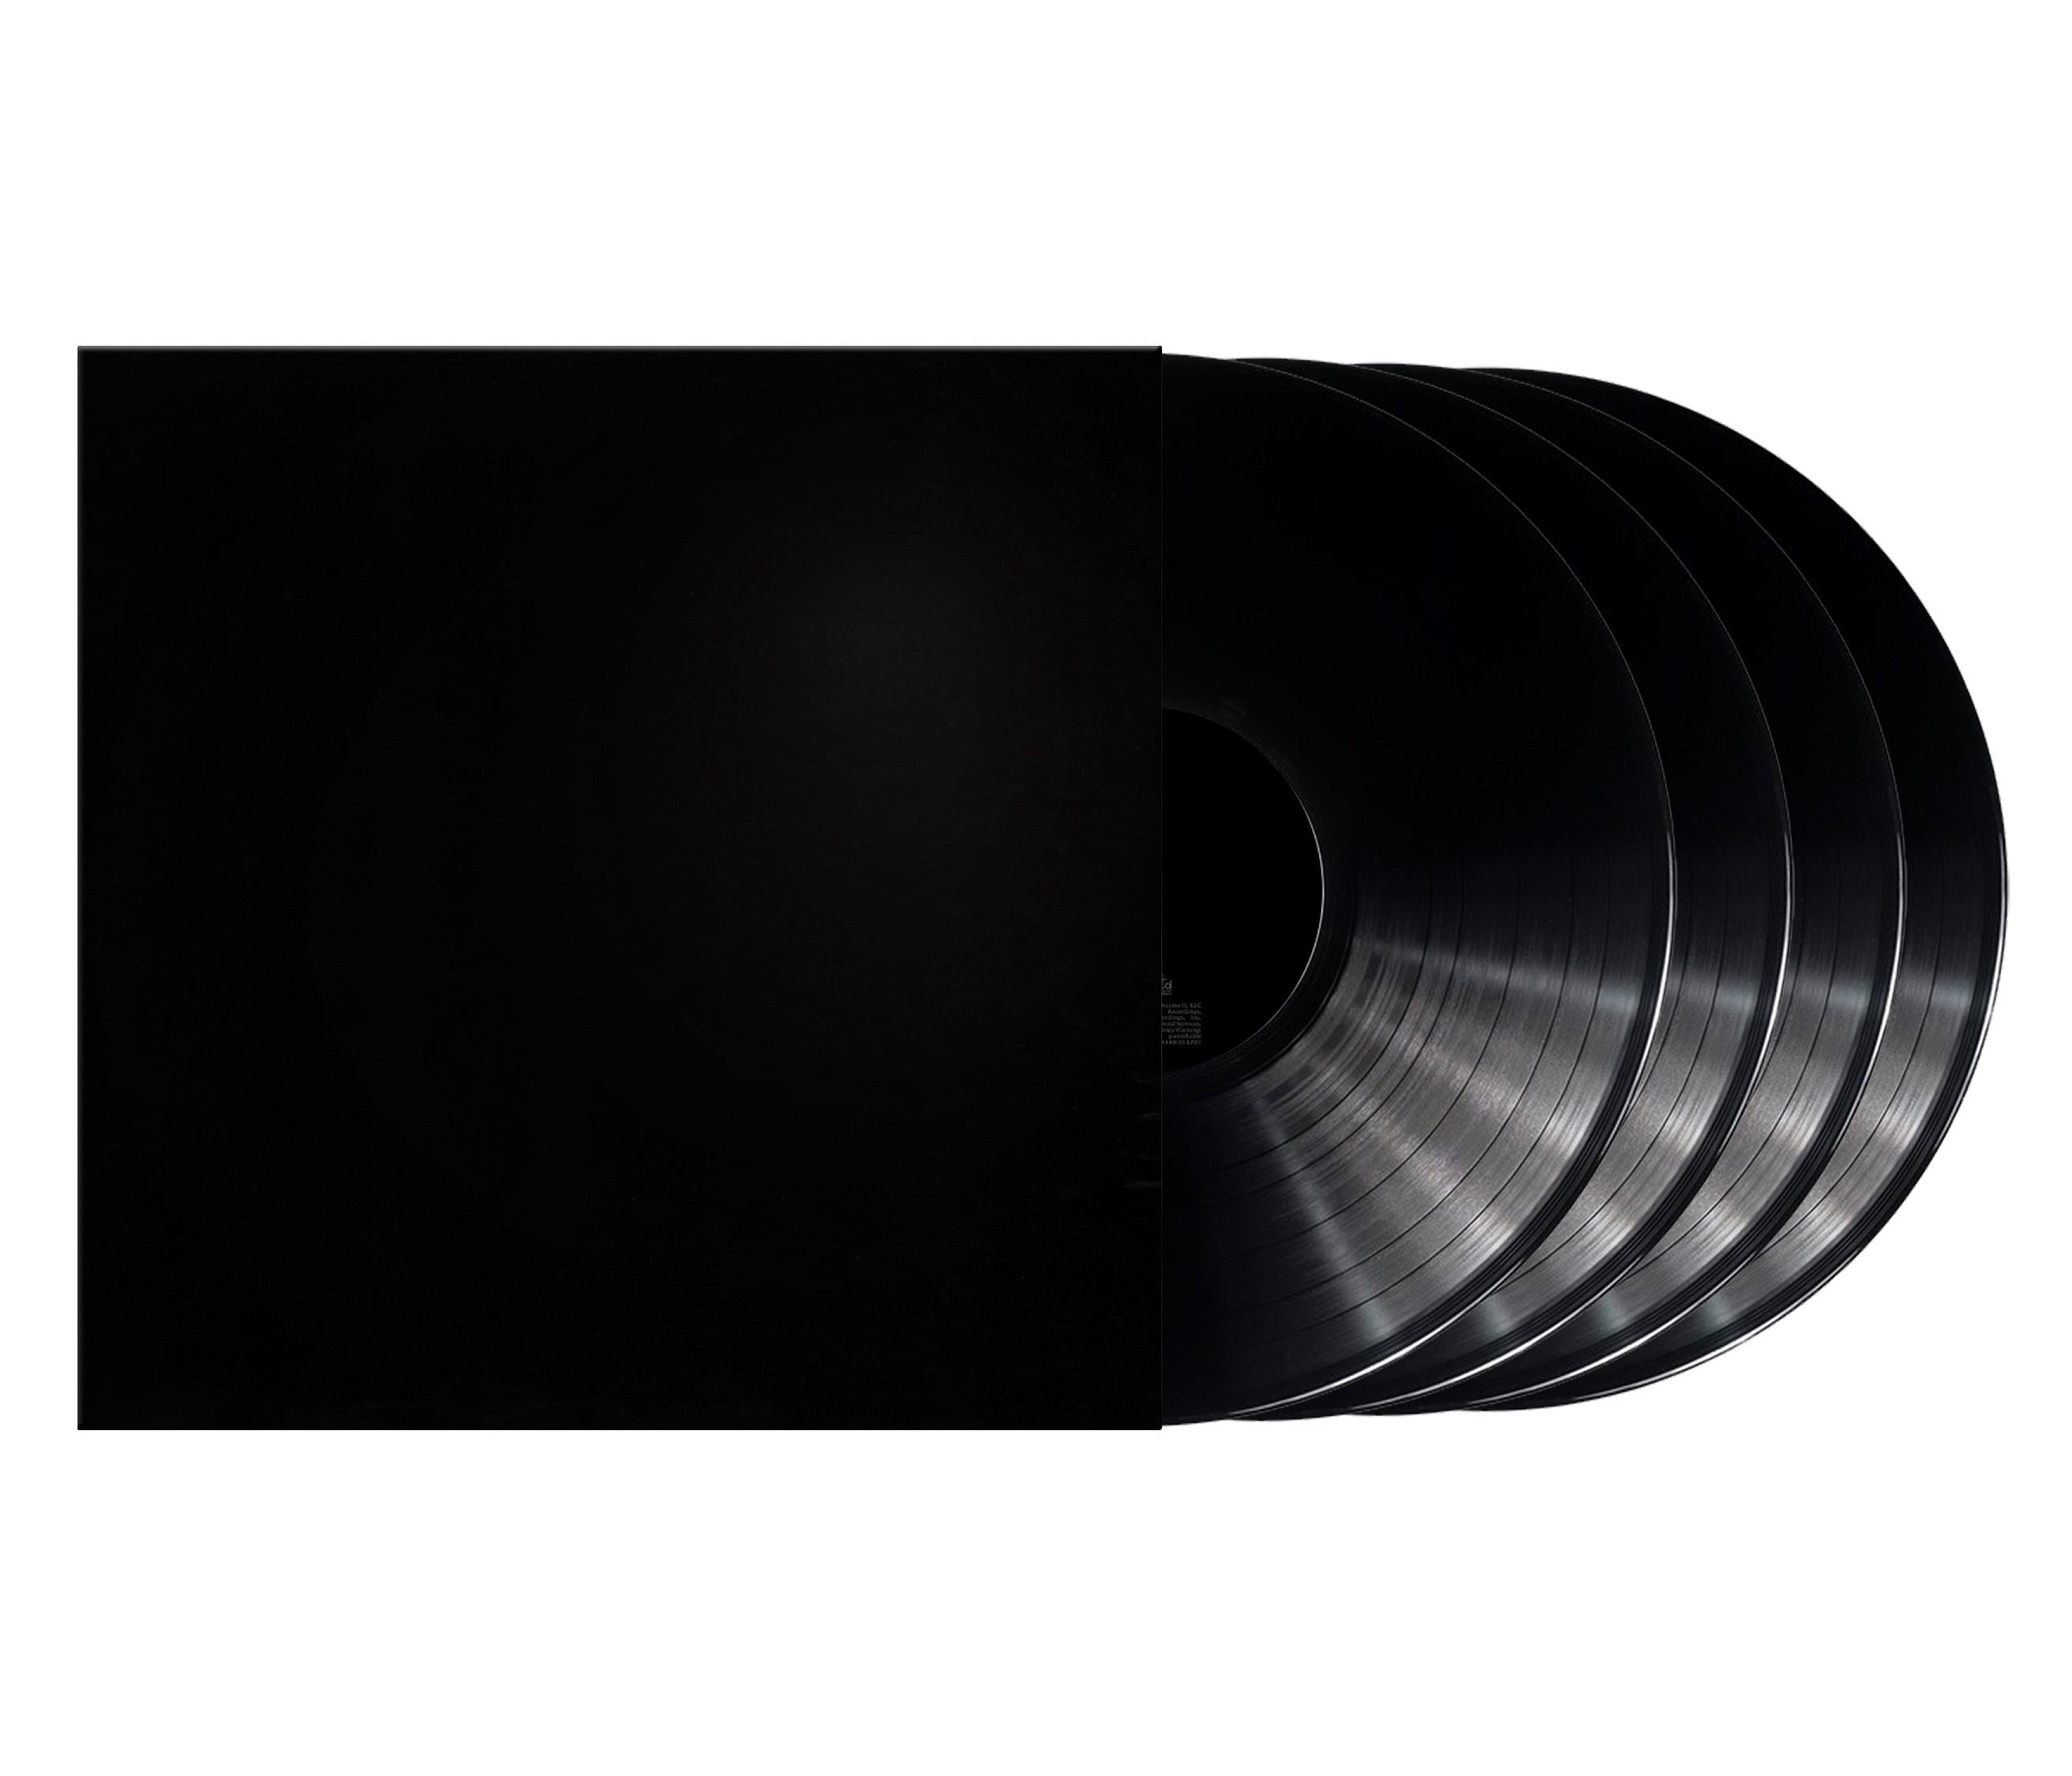 Kanye West | Donda [Explicit Content] (Boxed Set, Deluxe Edition) (4 Lp's) | Vinyl